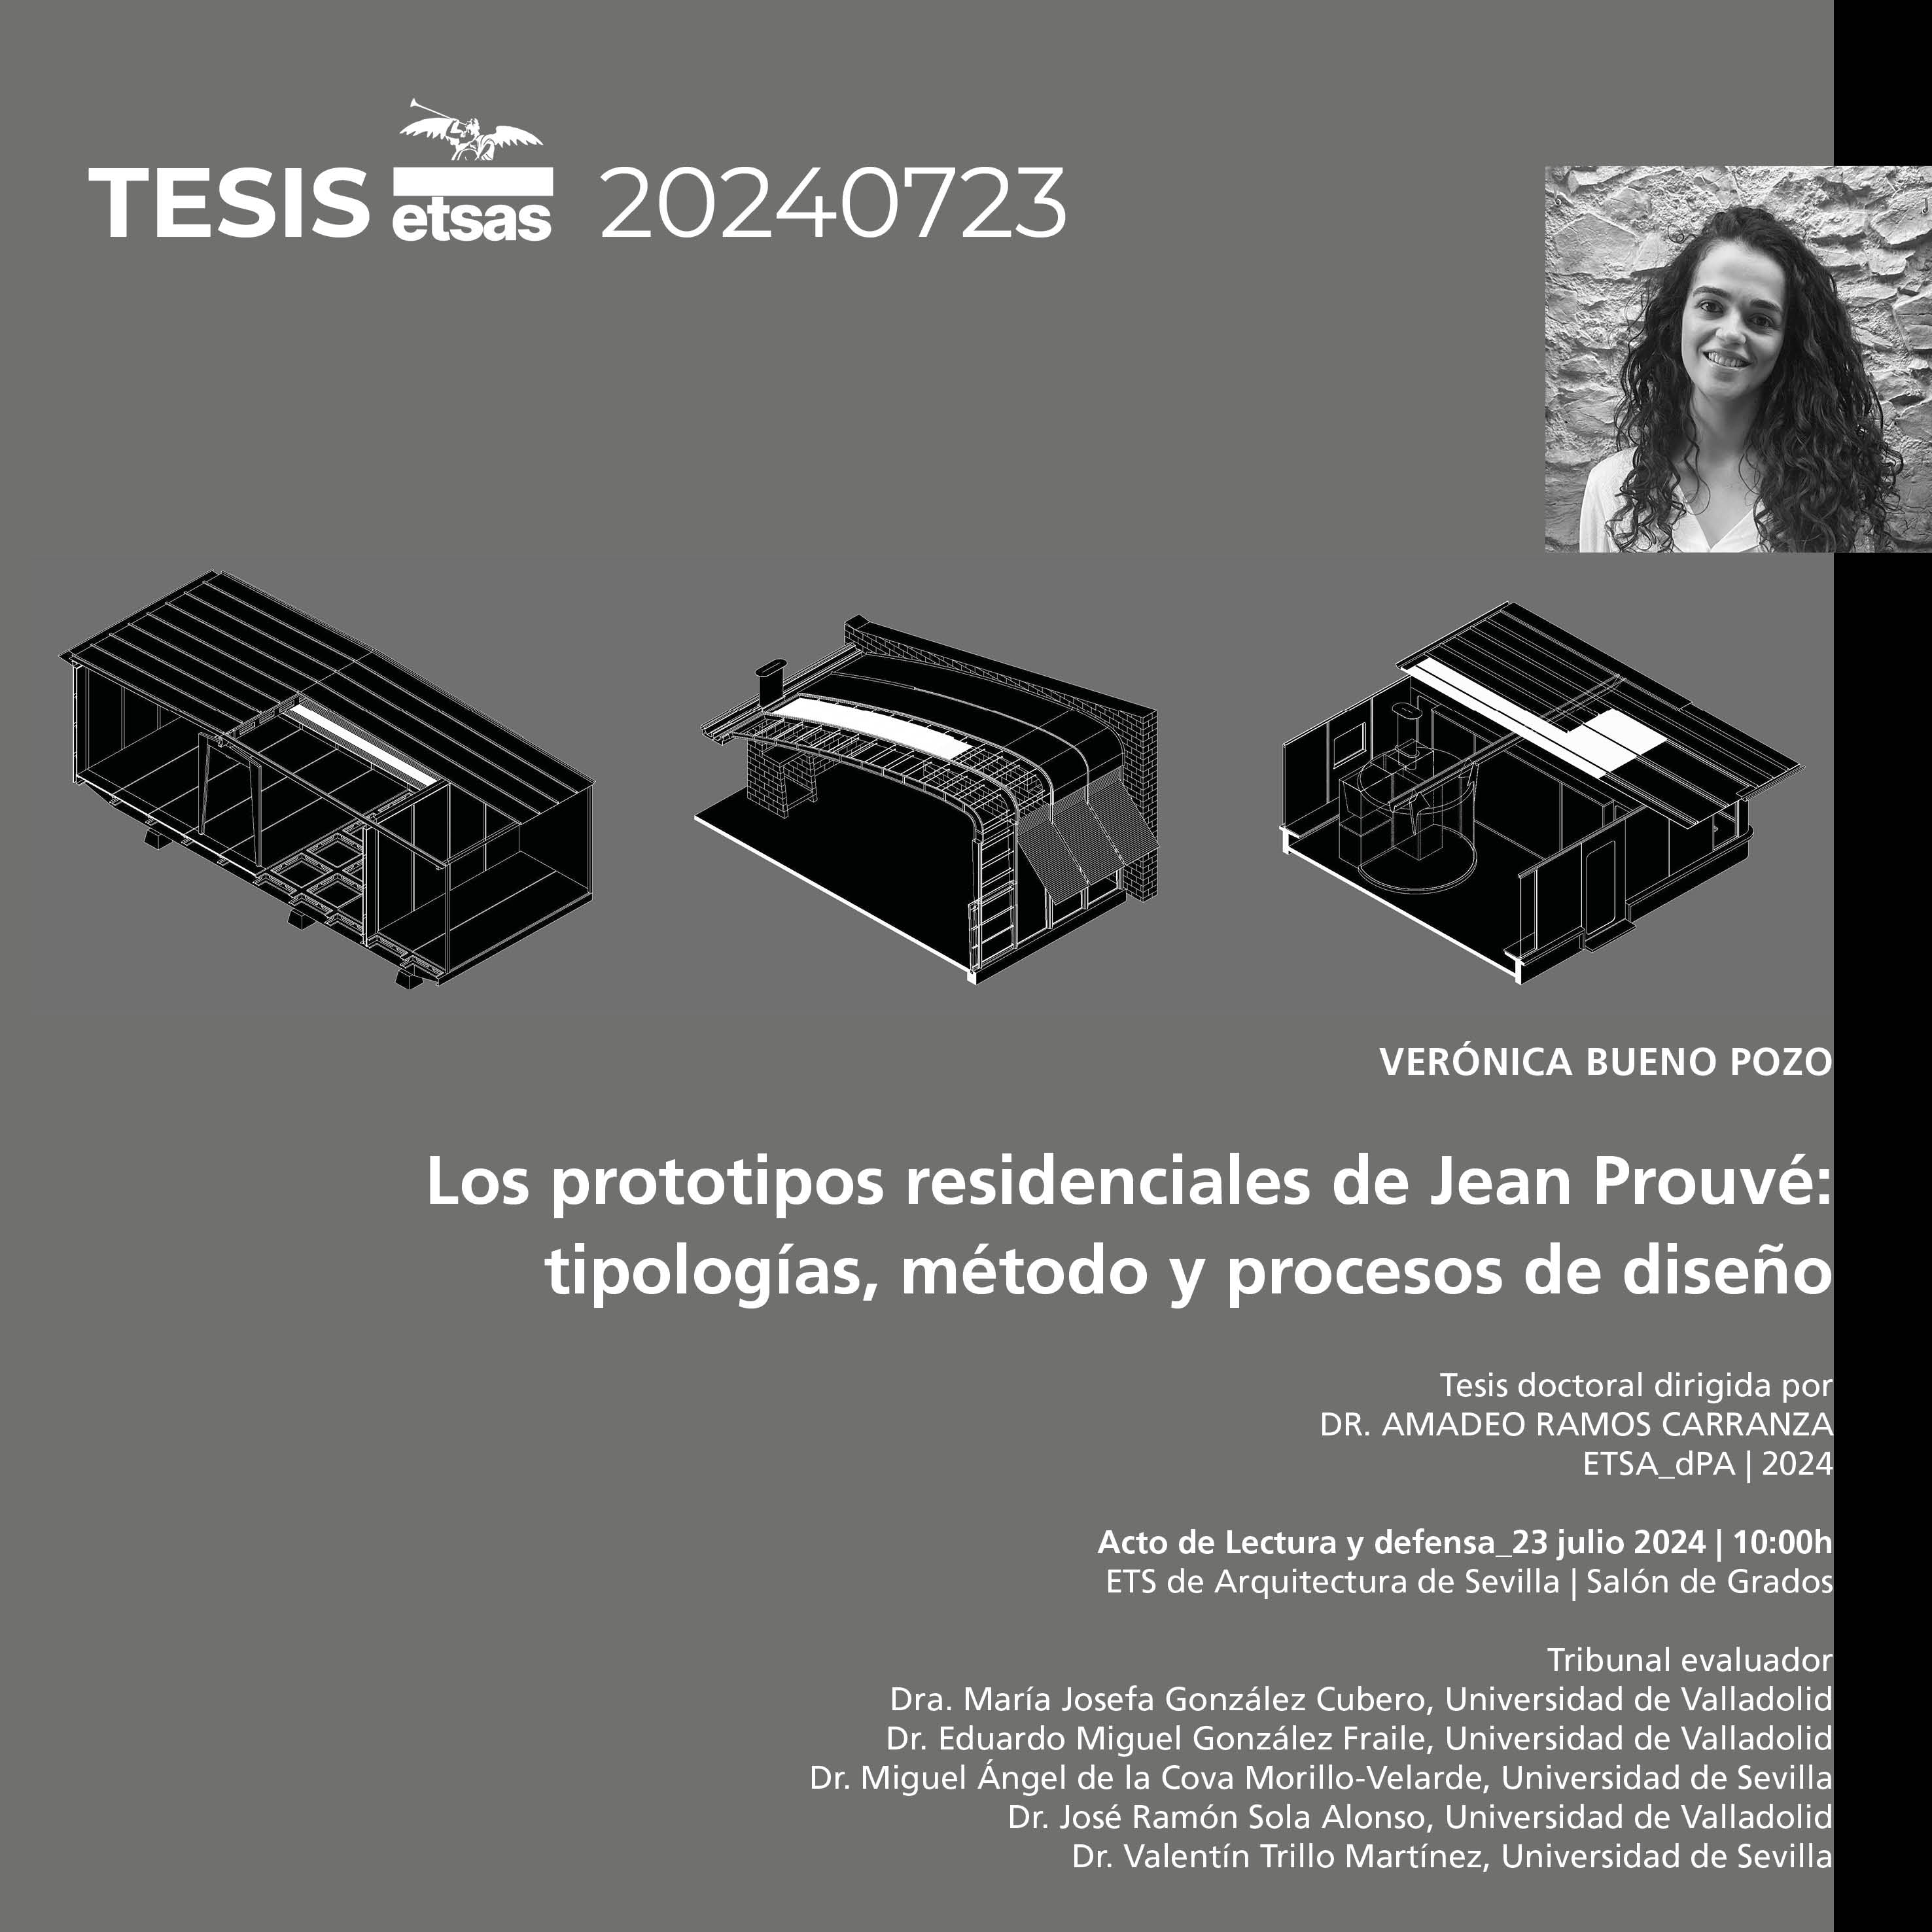 Los prototipos residenciales de Jean Prouvé: tipologías, método y procesos de diseño